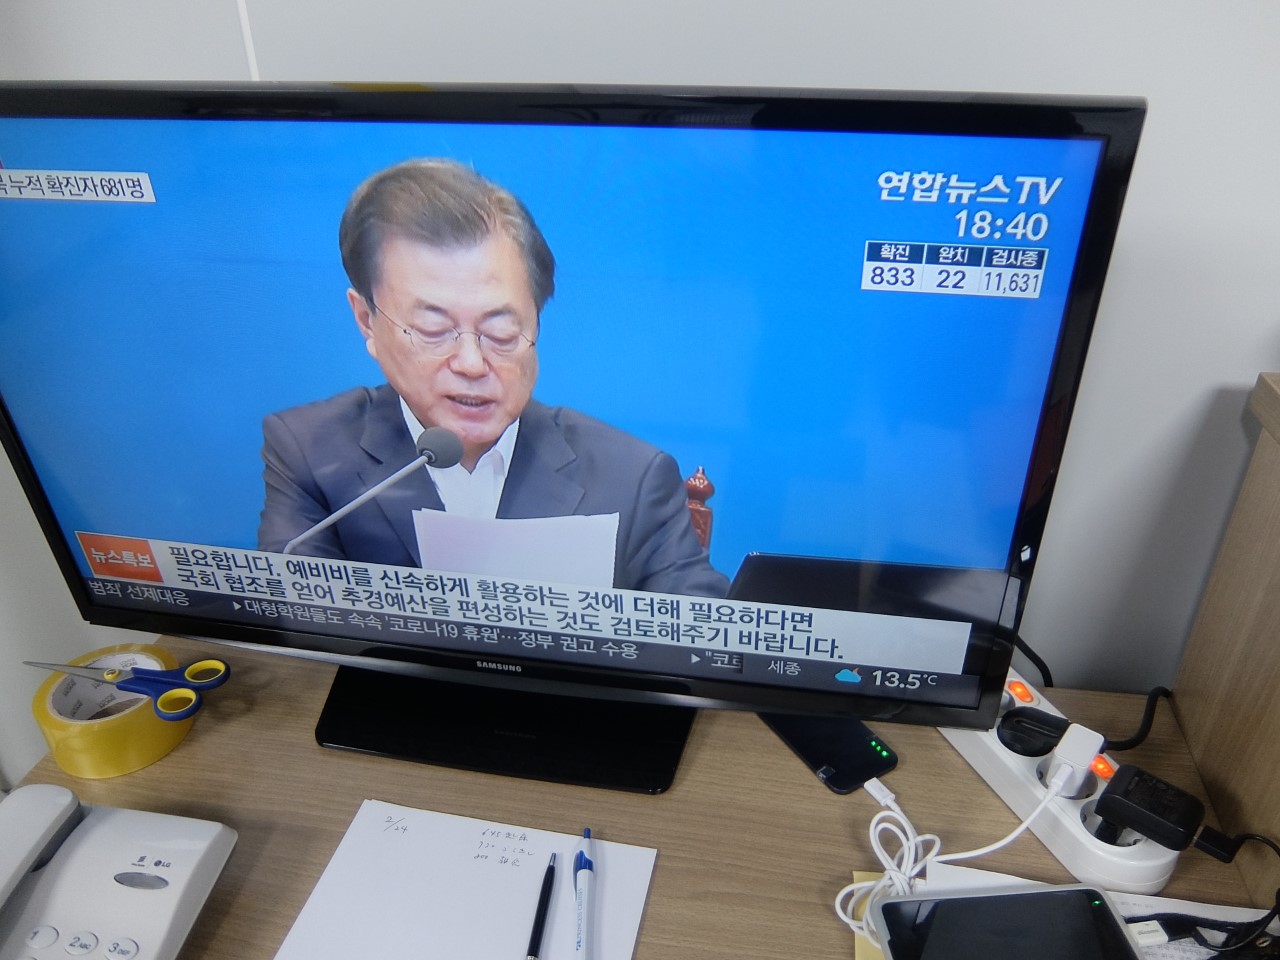 韓国のテレビニュース。画面右上に感染者や検査中の人数が表示されている。映っているのは文在寅大統領